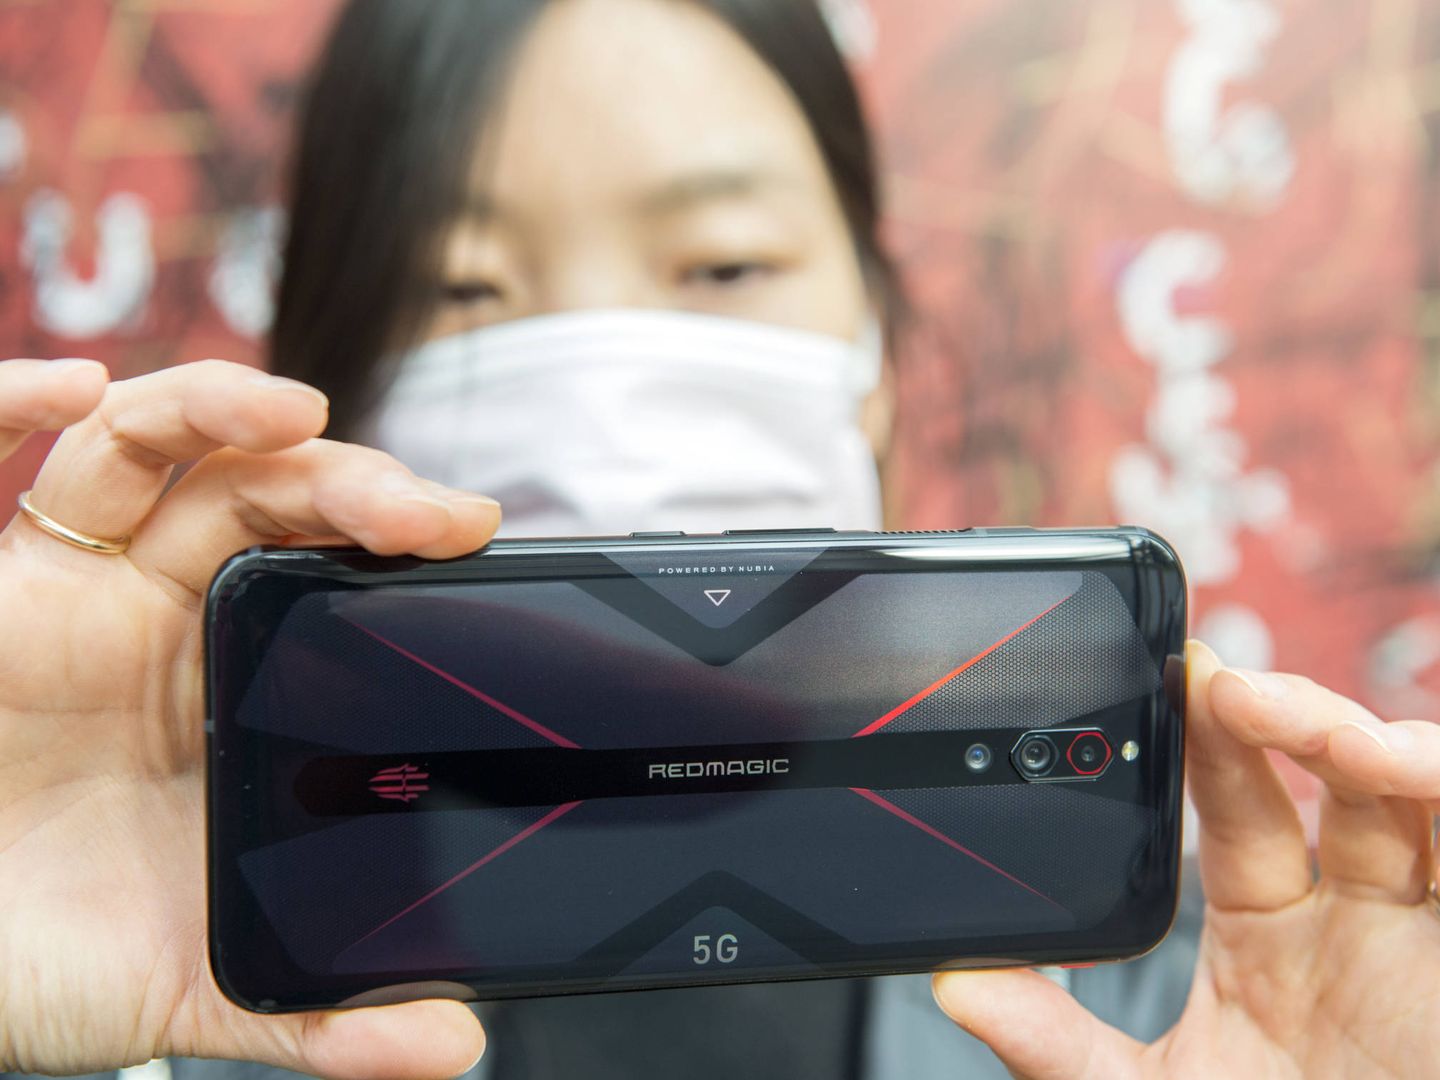 Cómo Xiaomi, la compañía china de celulares feos, reciclados y baratos,  planea conquistar el mundo con su nuevo teléfono - BBC News Mundo